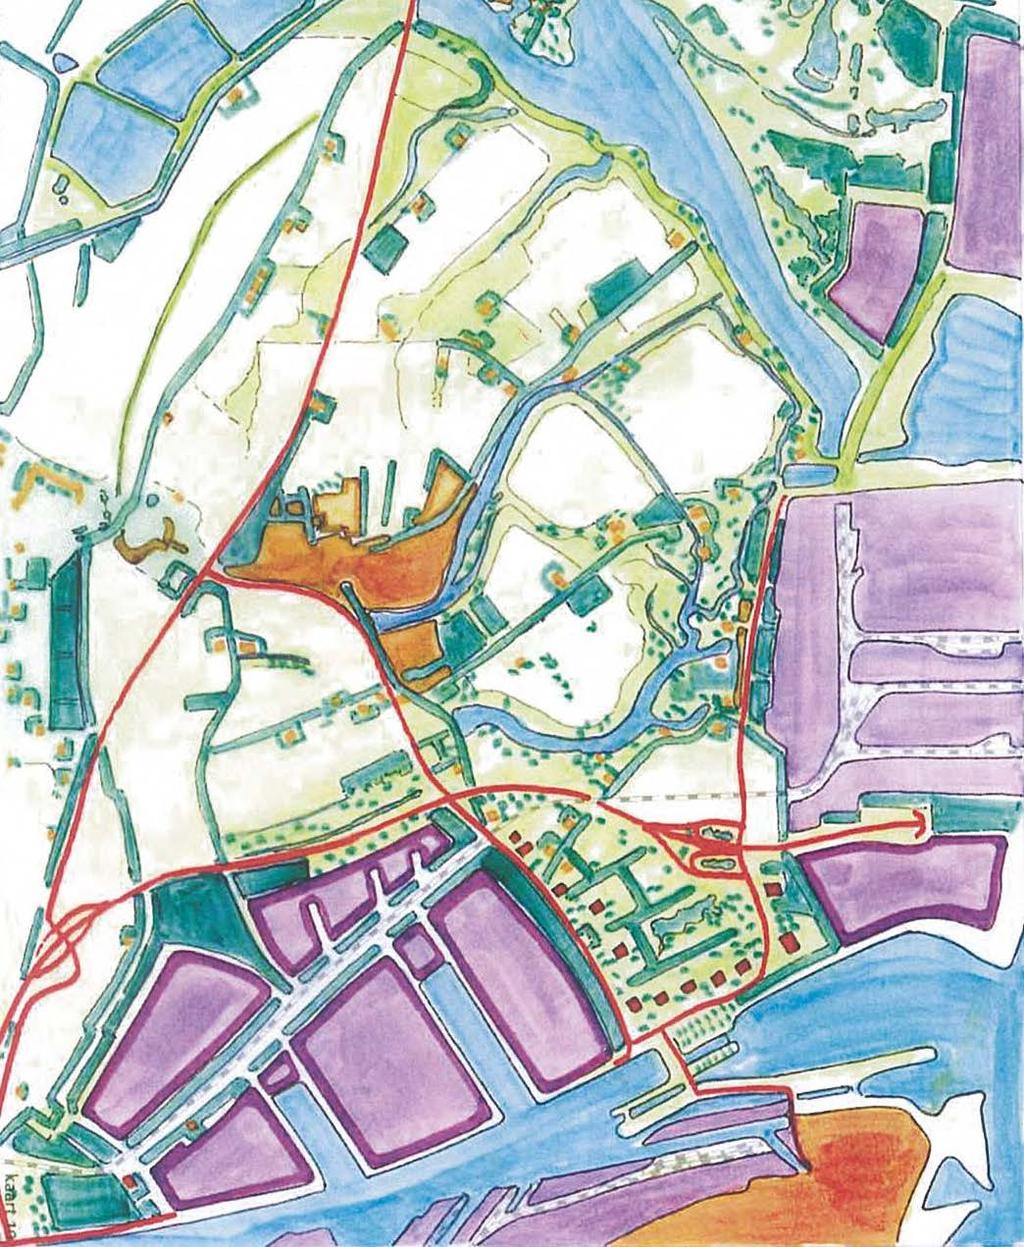 Landschapsuitvoeringsplan voor de Zeeuws-Vlaamse Kanaalzone Het streefbeeld binnen het landschapsuitvoeringsplan kenmerkt zich onder andere een kantoorlocatie in een groen parklandschap, industrie en